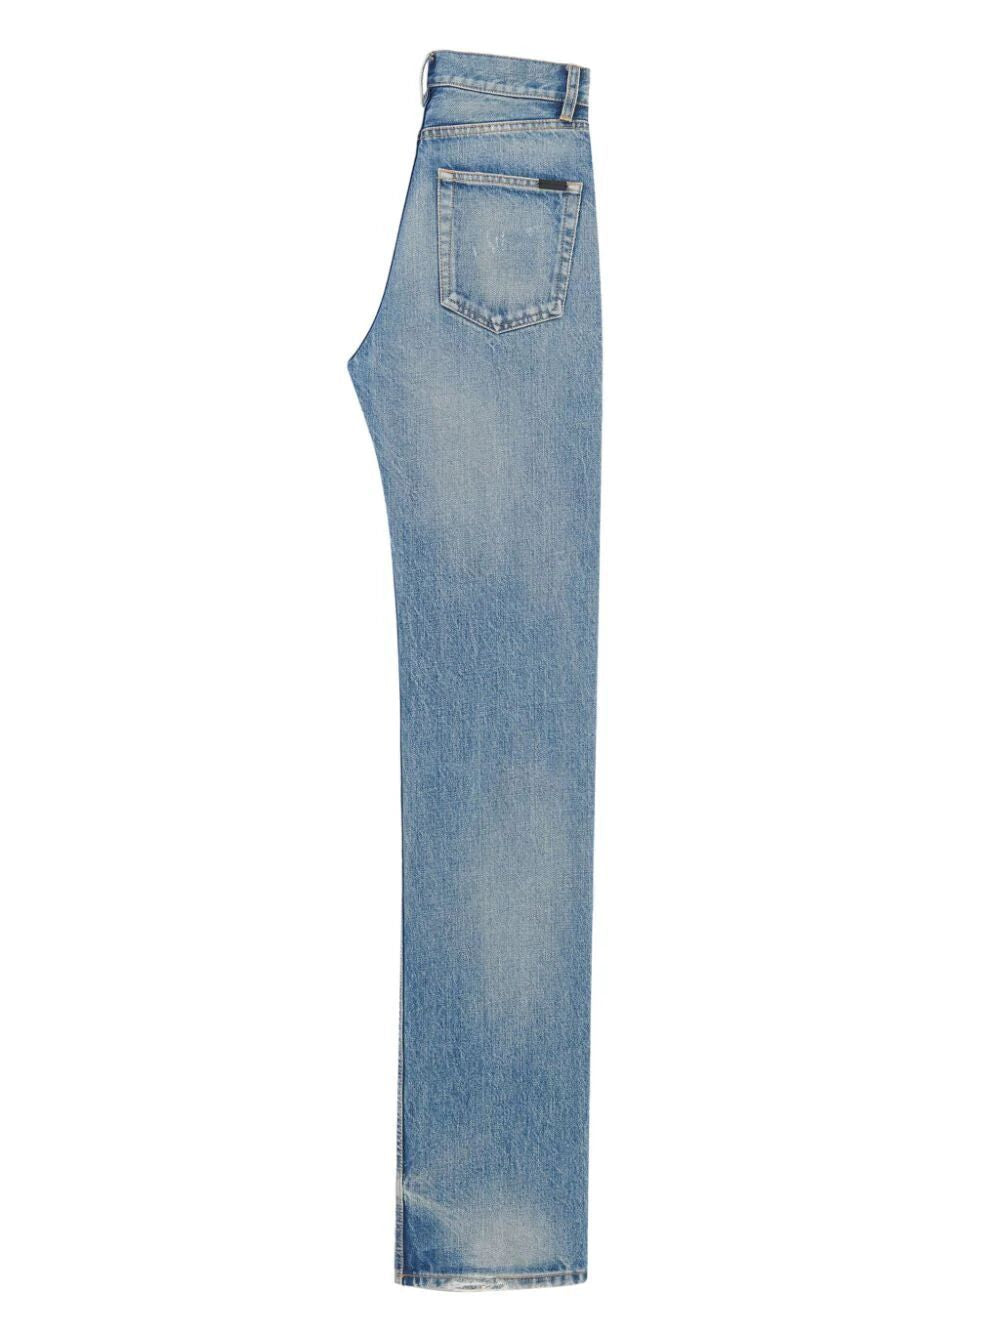 SAINT LAURENT Navy Blue Straight Leg Jeans for Women